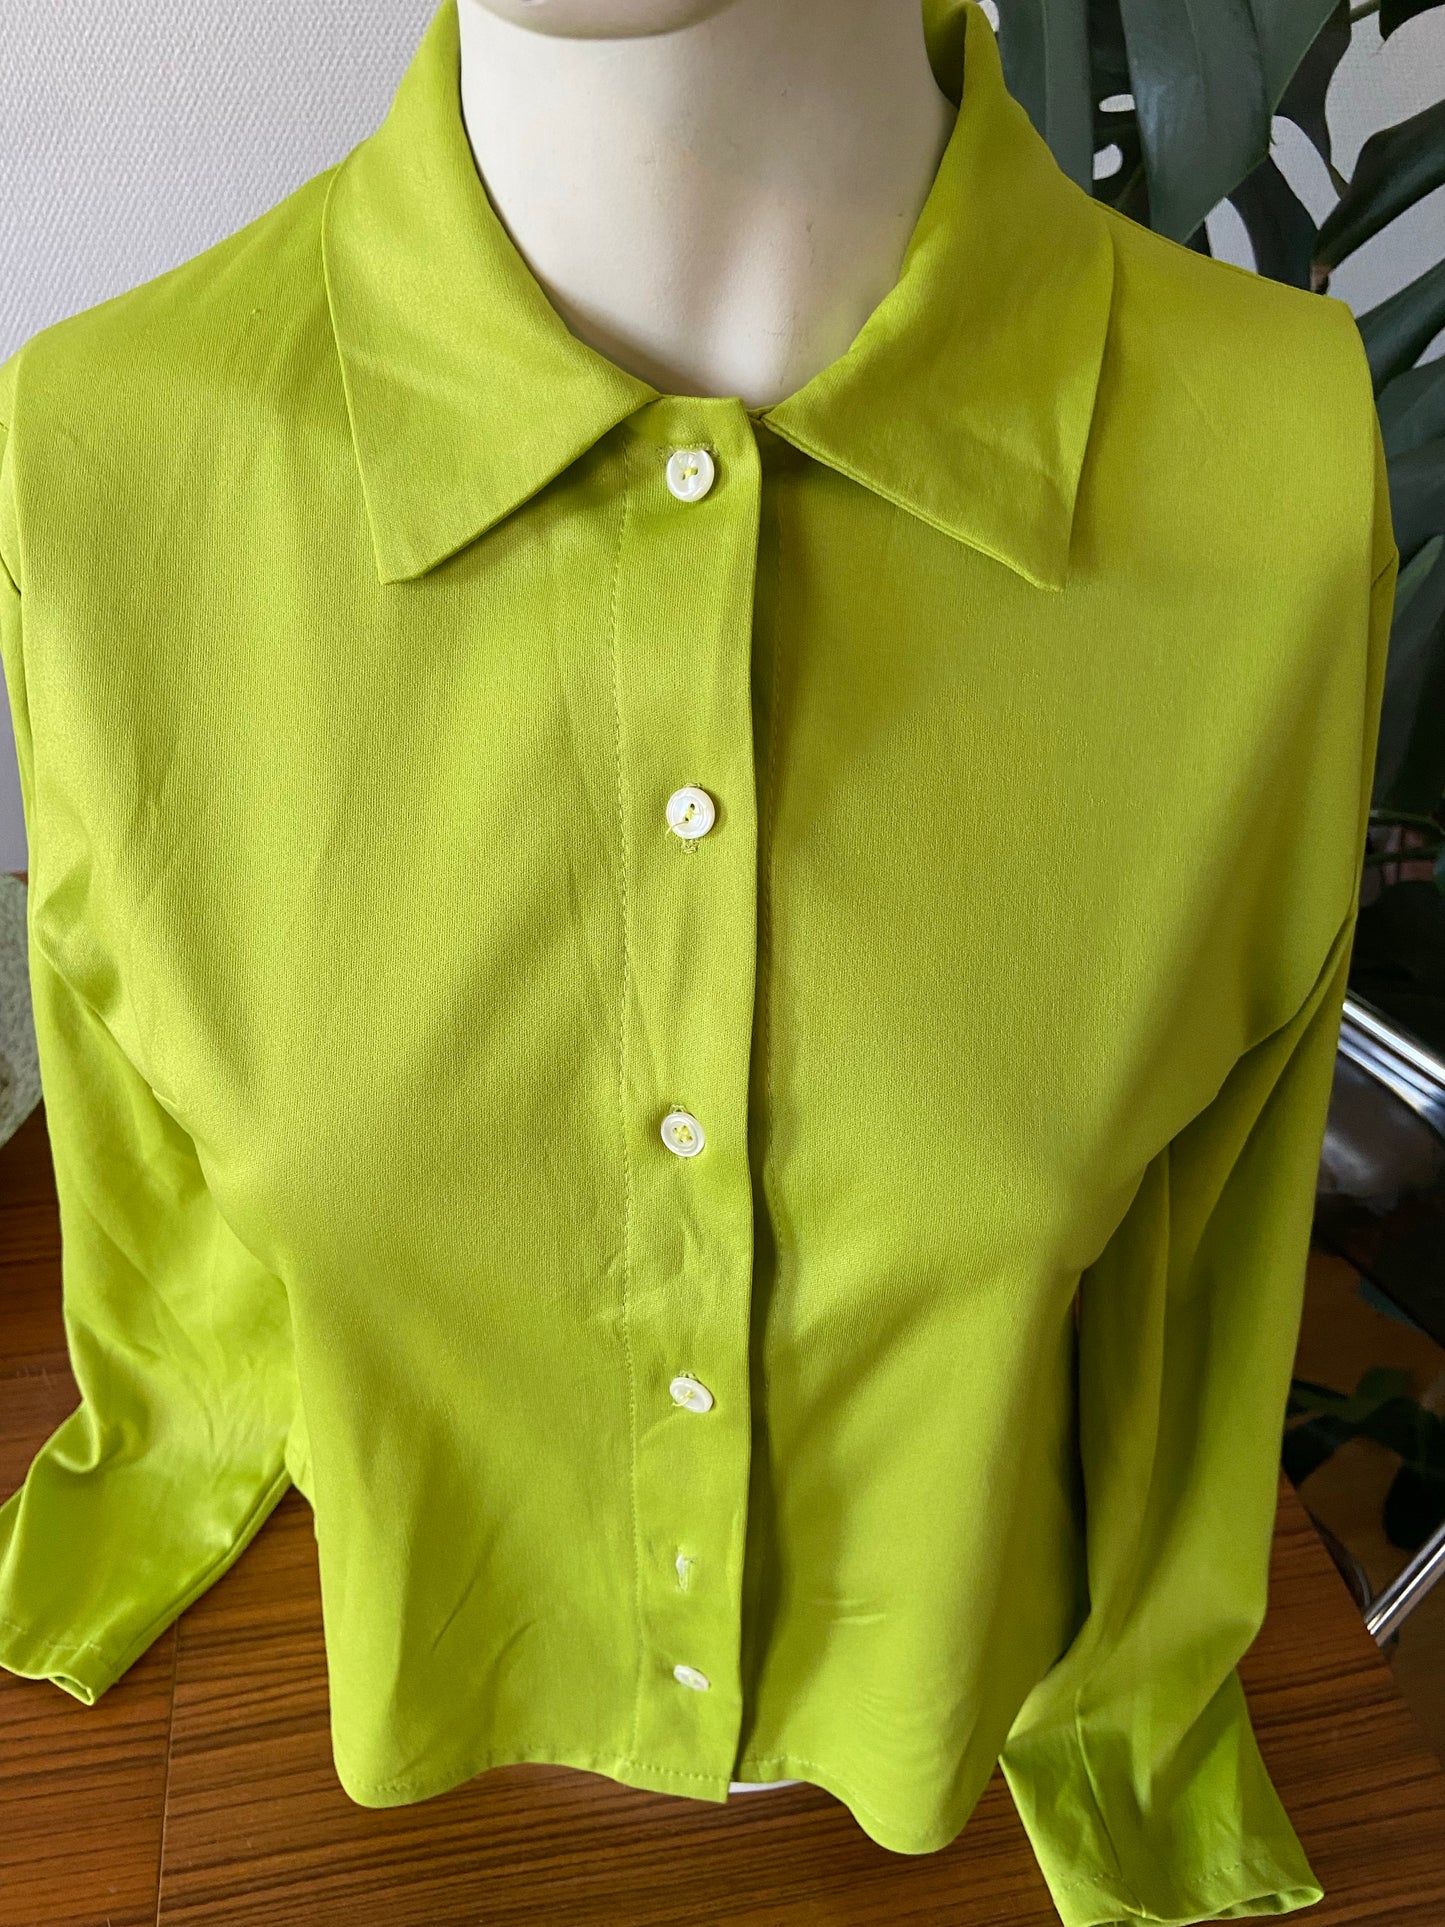 Apple green shirt